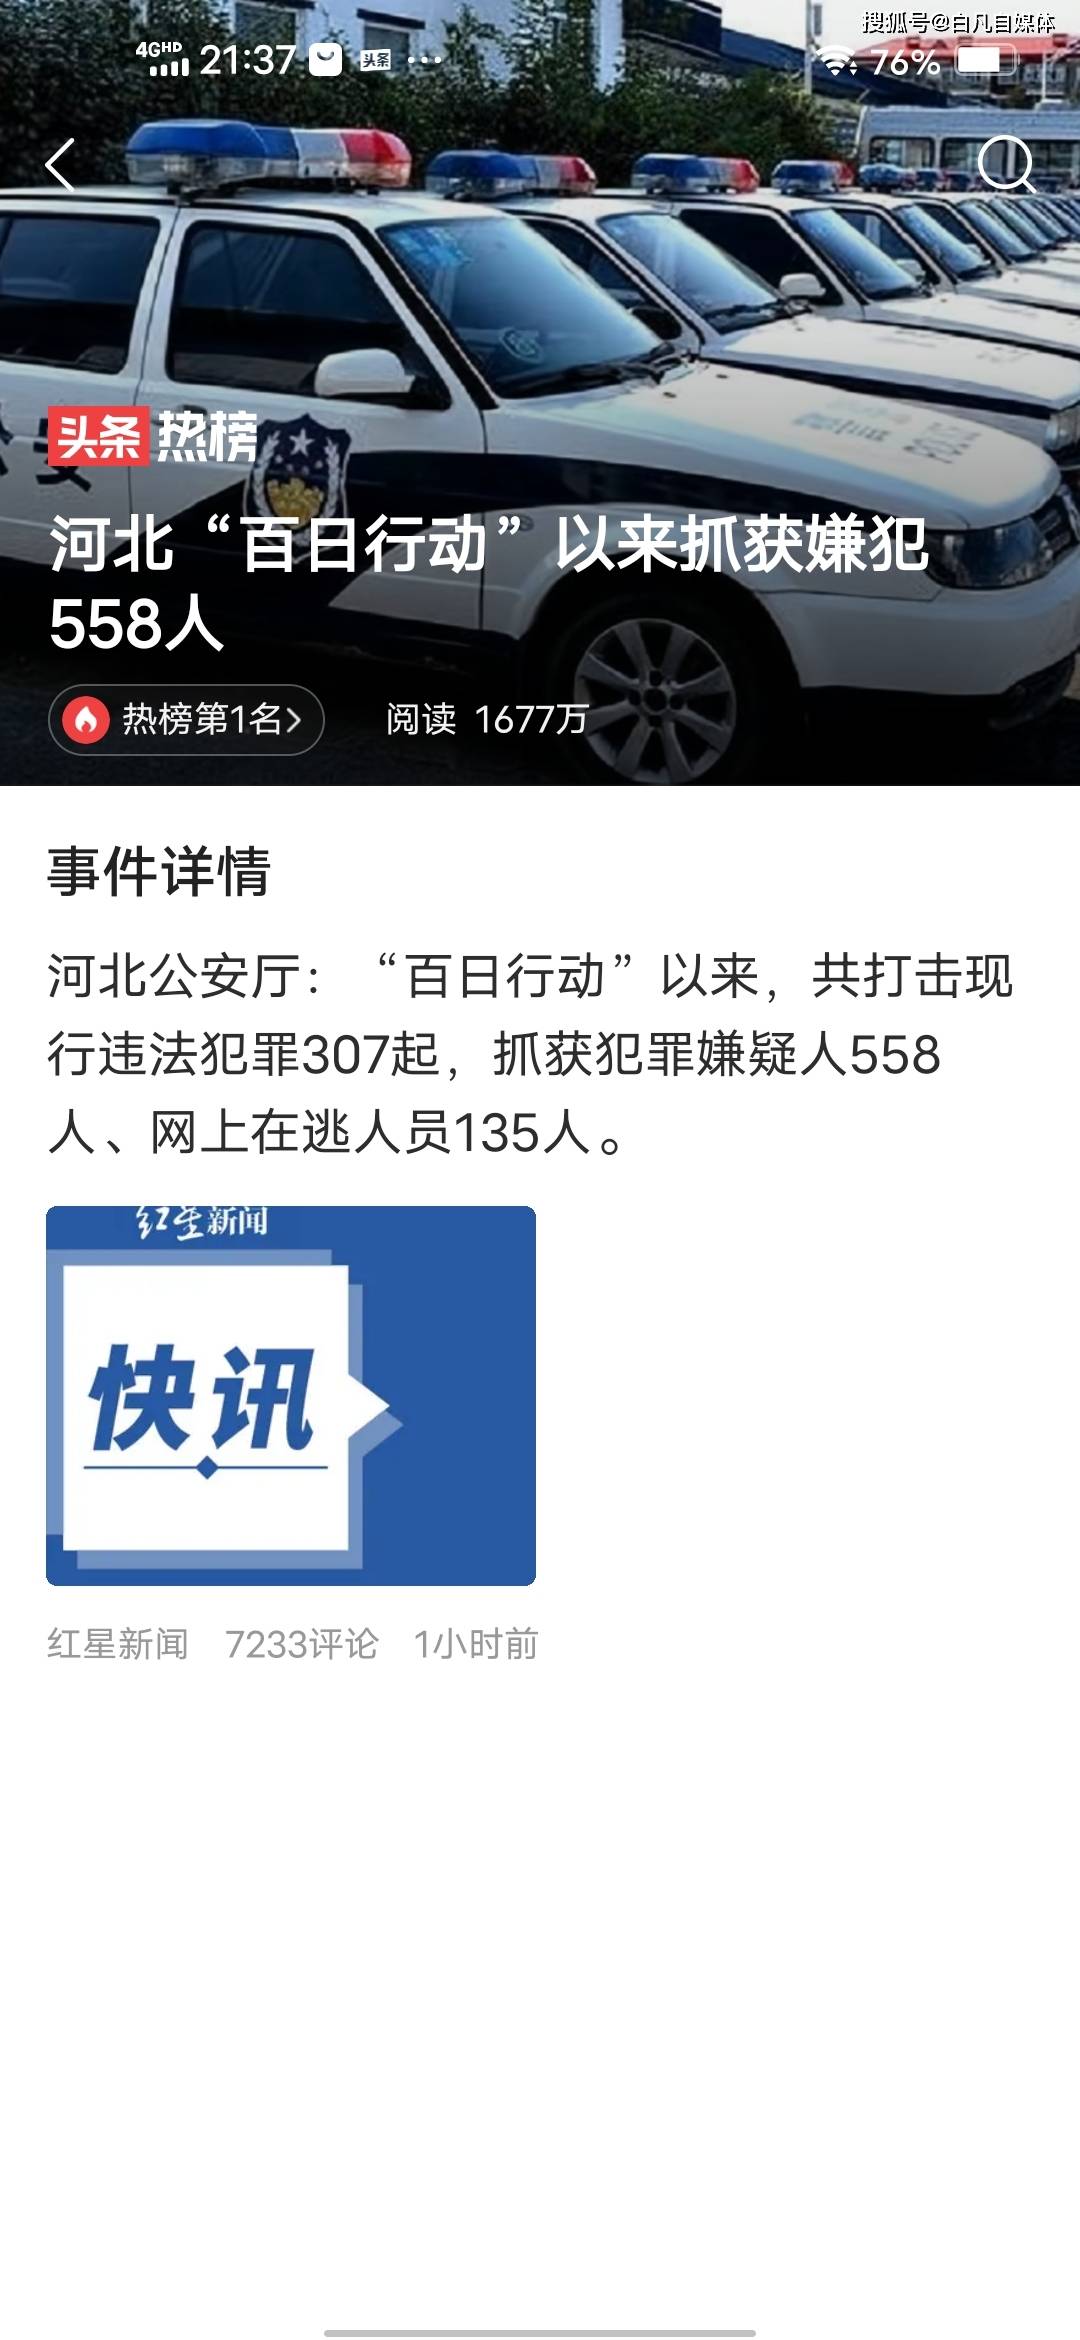 河北公安厅：“百日行动”以来共抓获犯罪嫌疑人558人 为什么网友并不买账